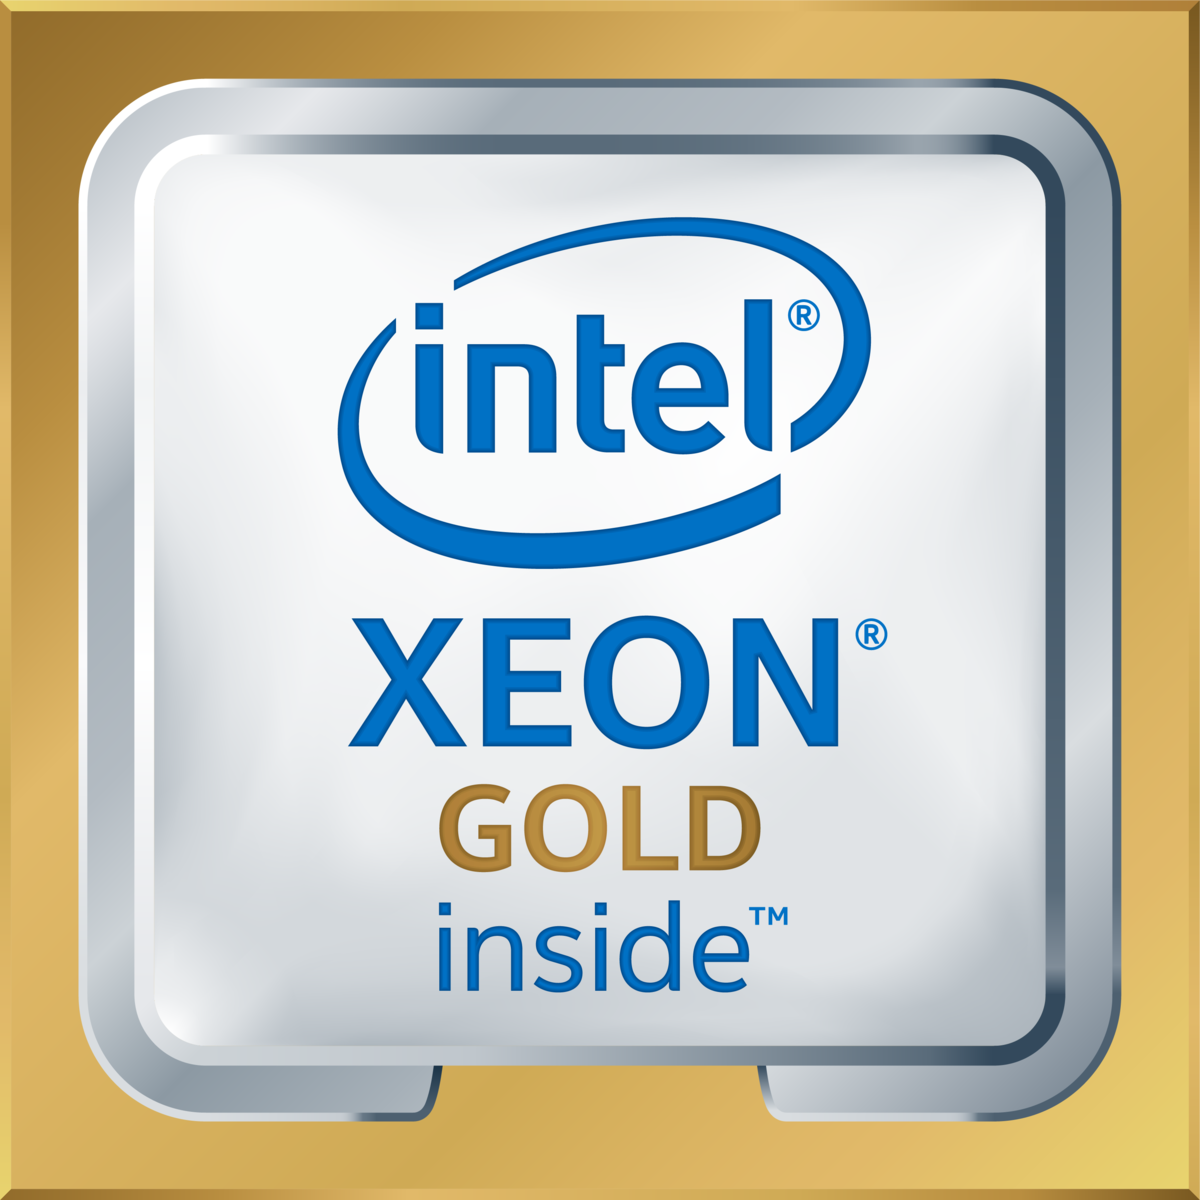 Intel(R) Xeon(R) Gold 6161 CPU @ 2.20GHz's logo